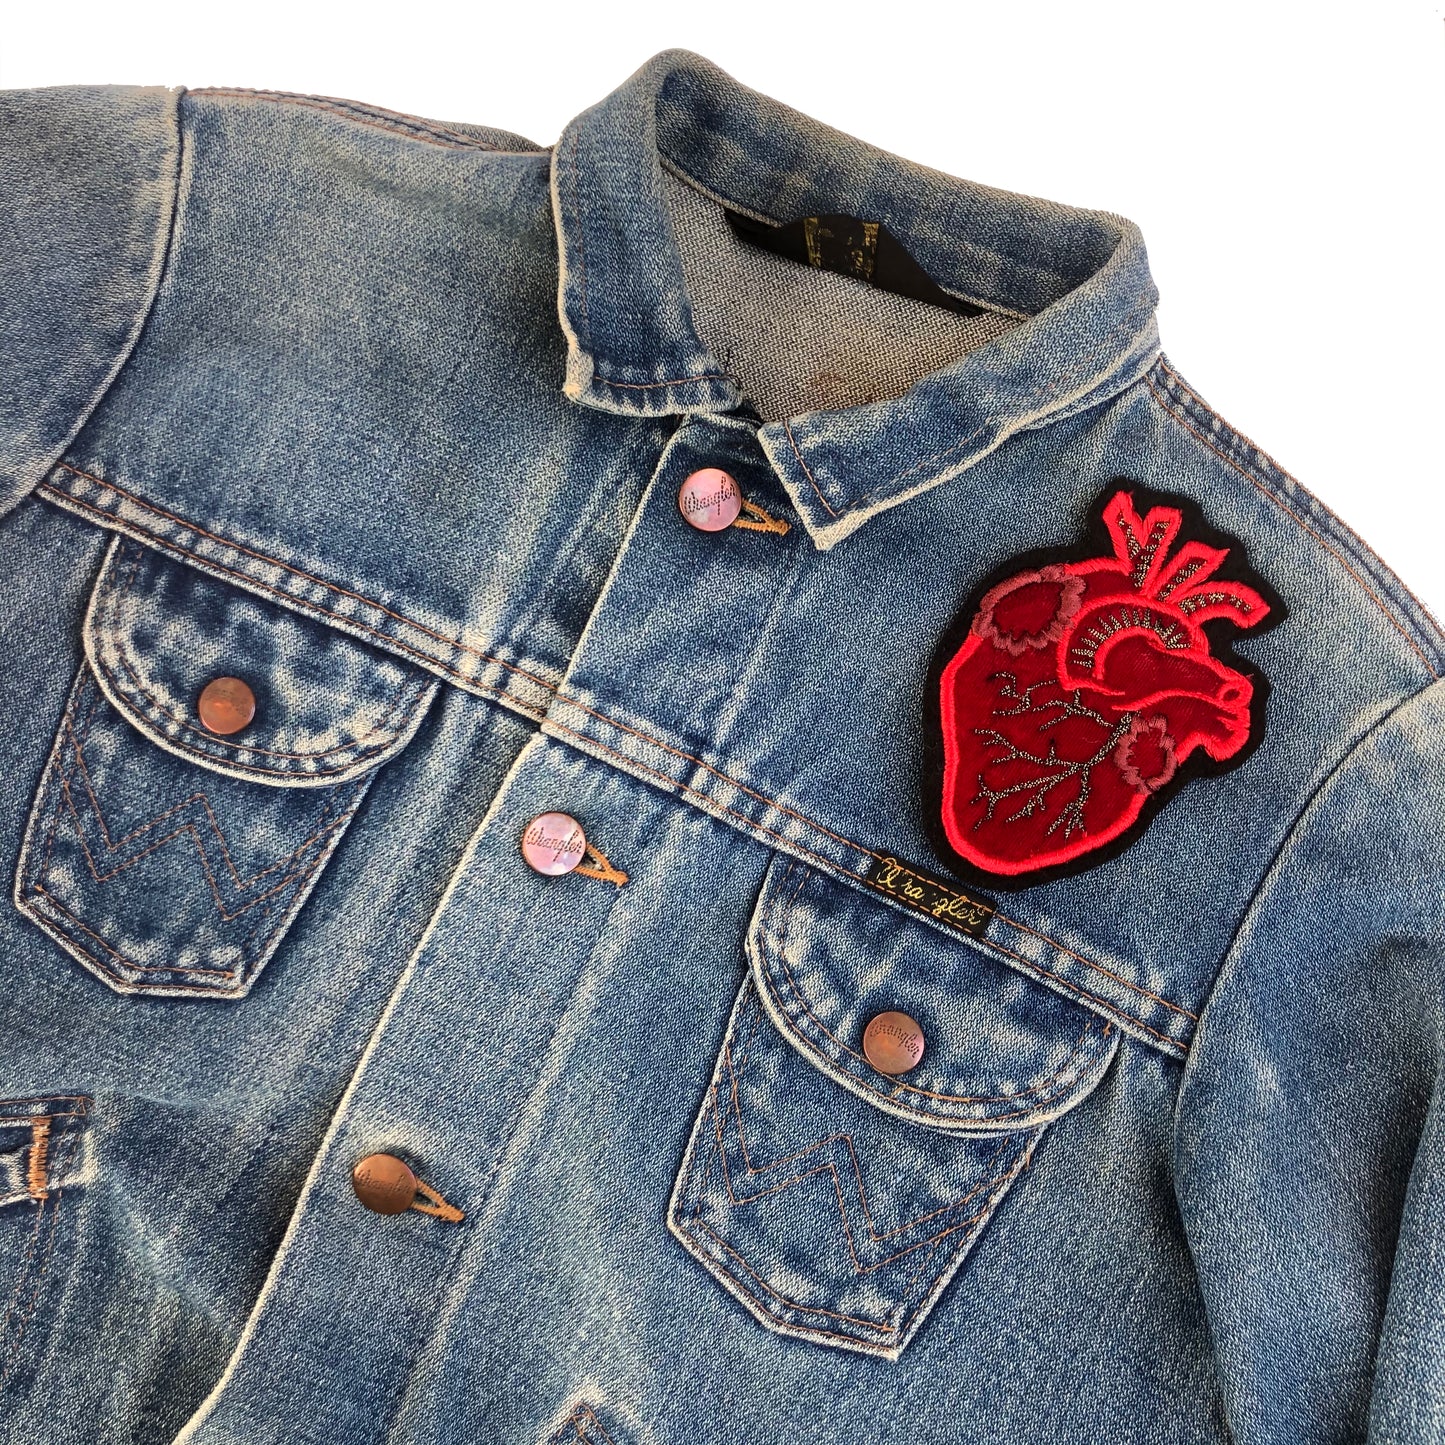 Velvet heart embroidered patch on the front shoulder of a blue denim jacket